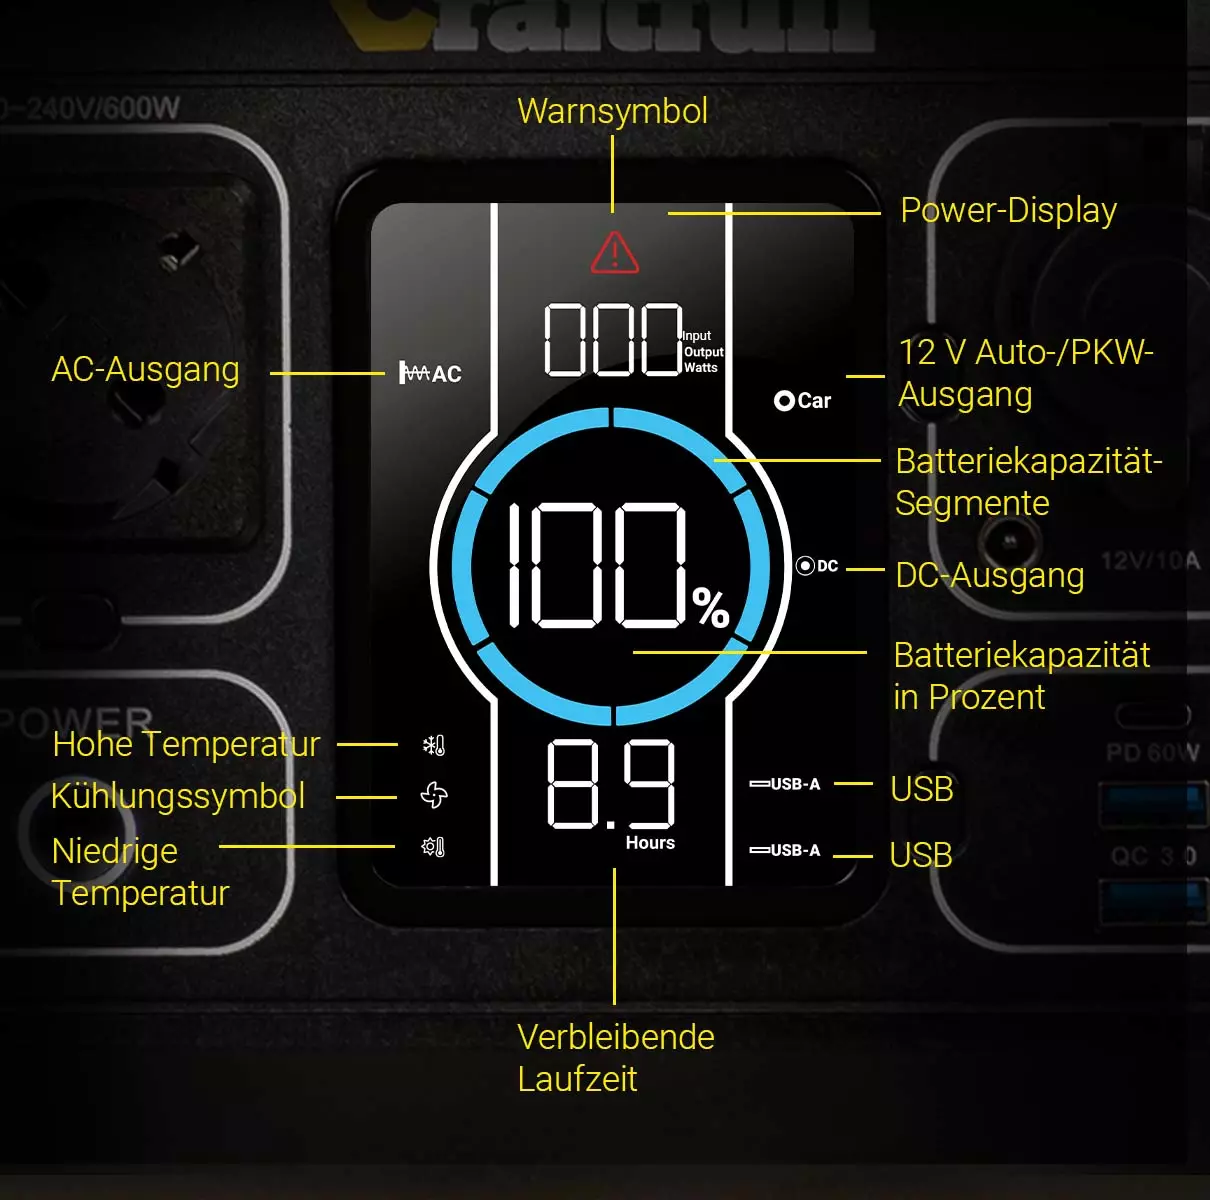 Der LCD-Display zeigt 100 % Batteriekapazität, die verbleibende Laufzeit von 8,9 Stunden und mehr